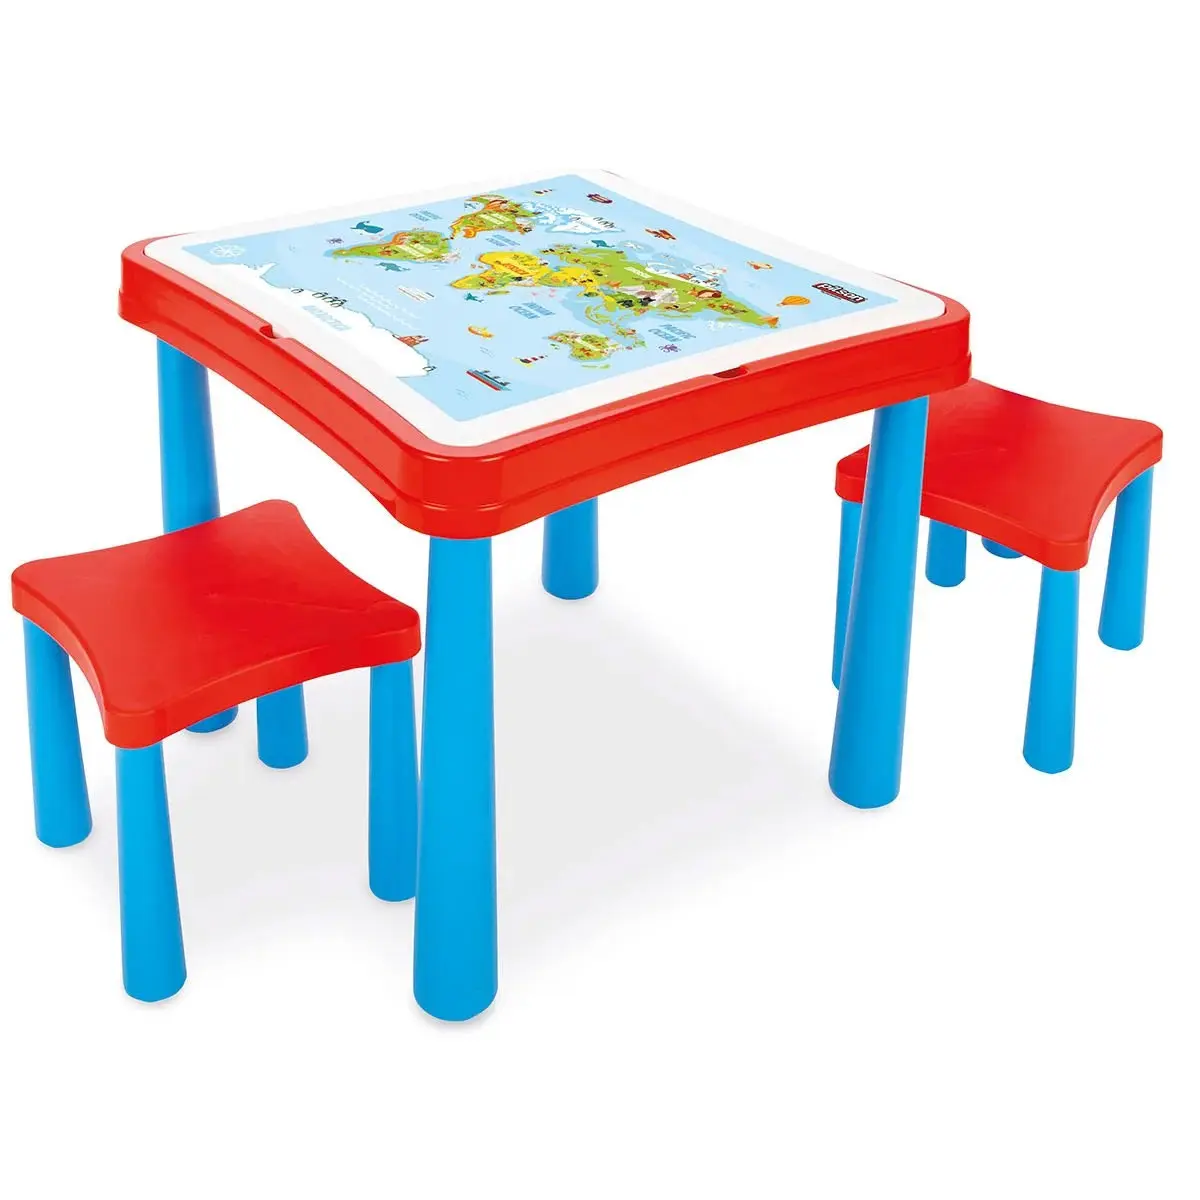 마스터 스터디 데스크 키즈 체어 라이센스 제품 어린이를위한 편안한 좌석 놀이 중 어린이를위한 플라스틱 의자 장난감 유럽